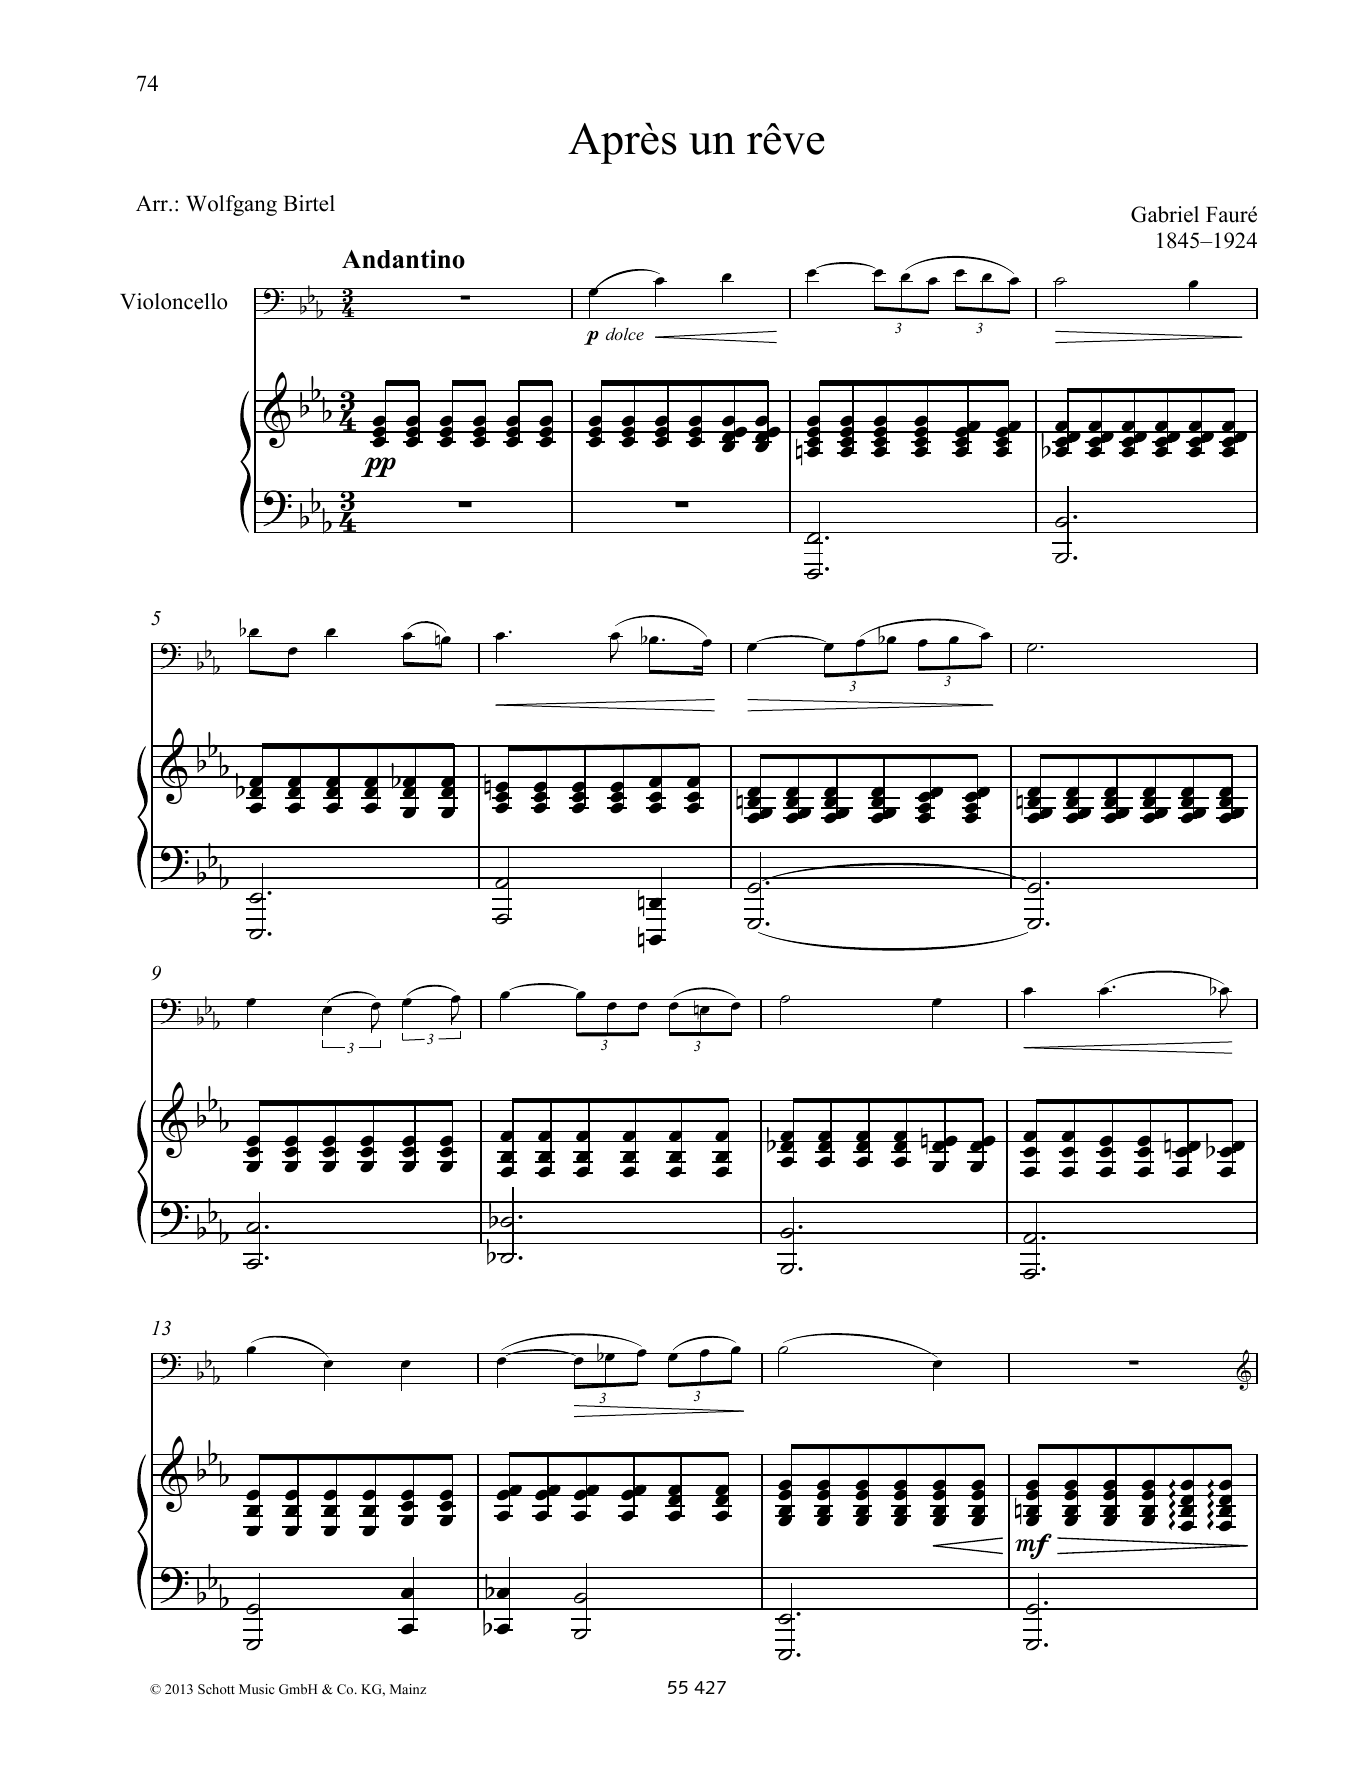 Download Gabriel Fauré Apres un reve Sheet Music